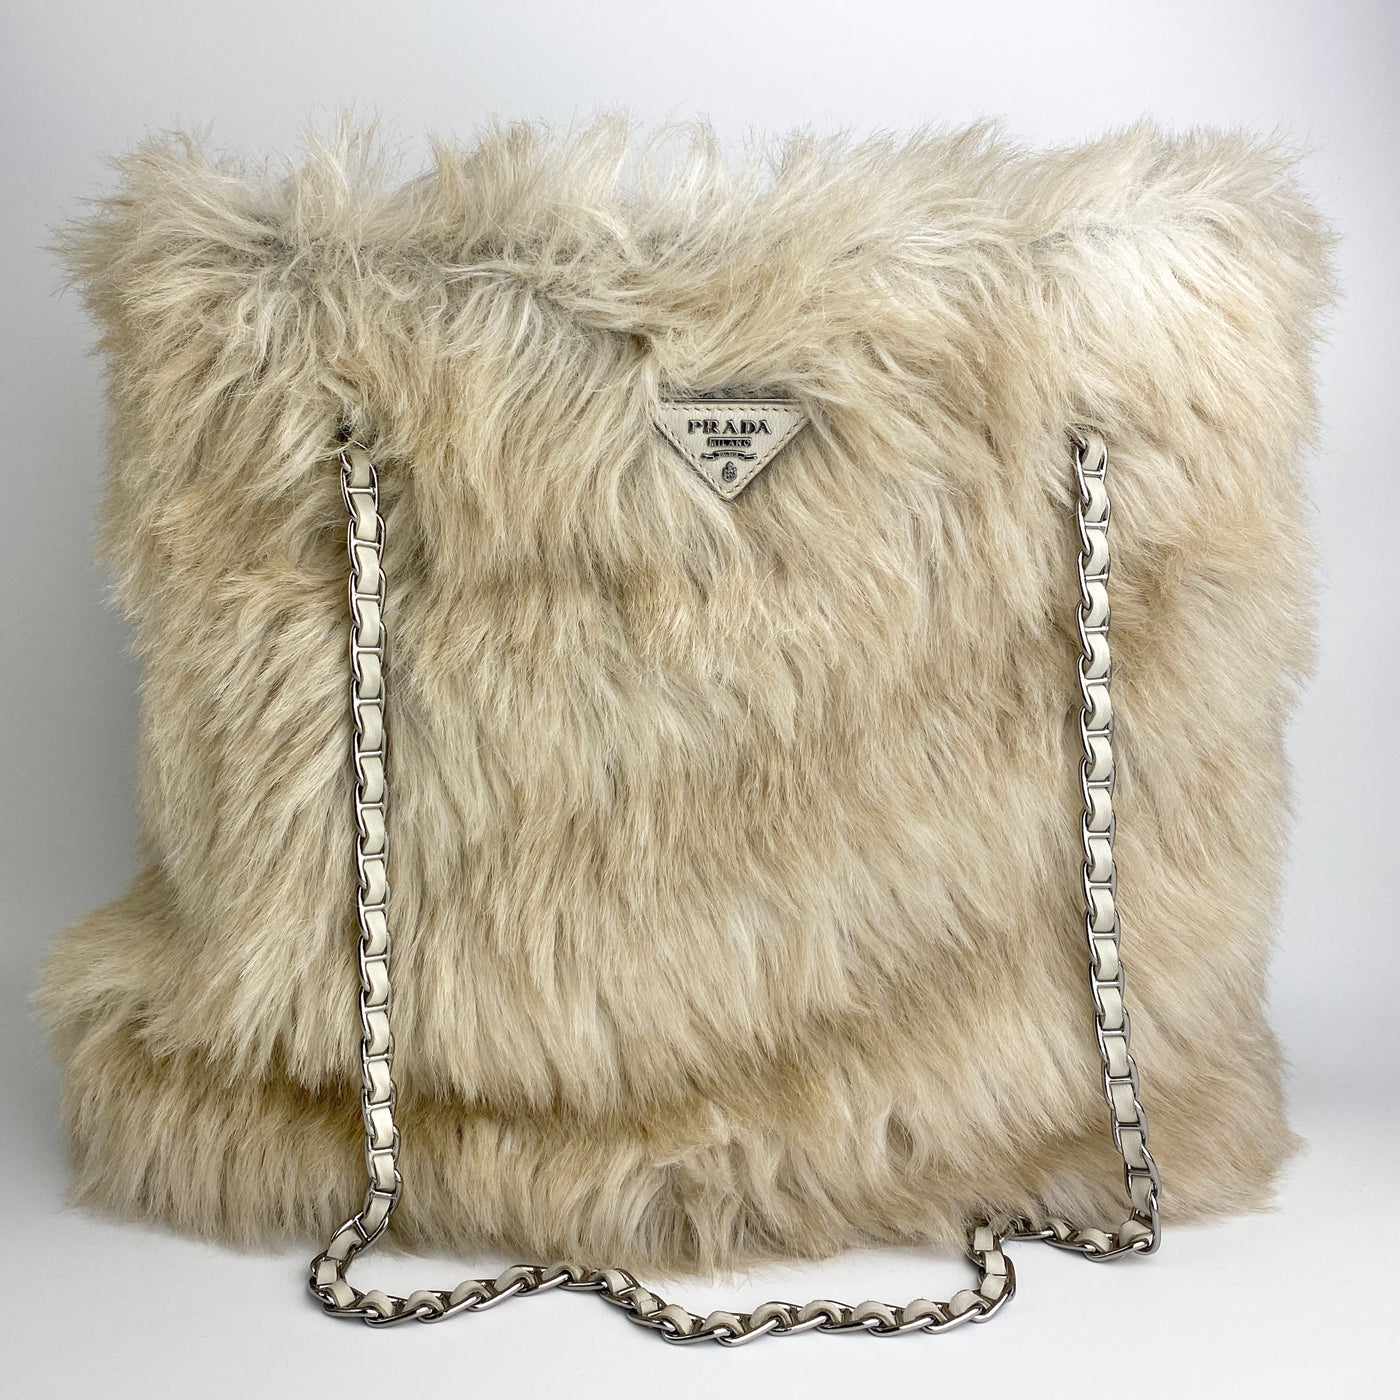 Prada Fur Tote Bag